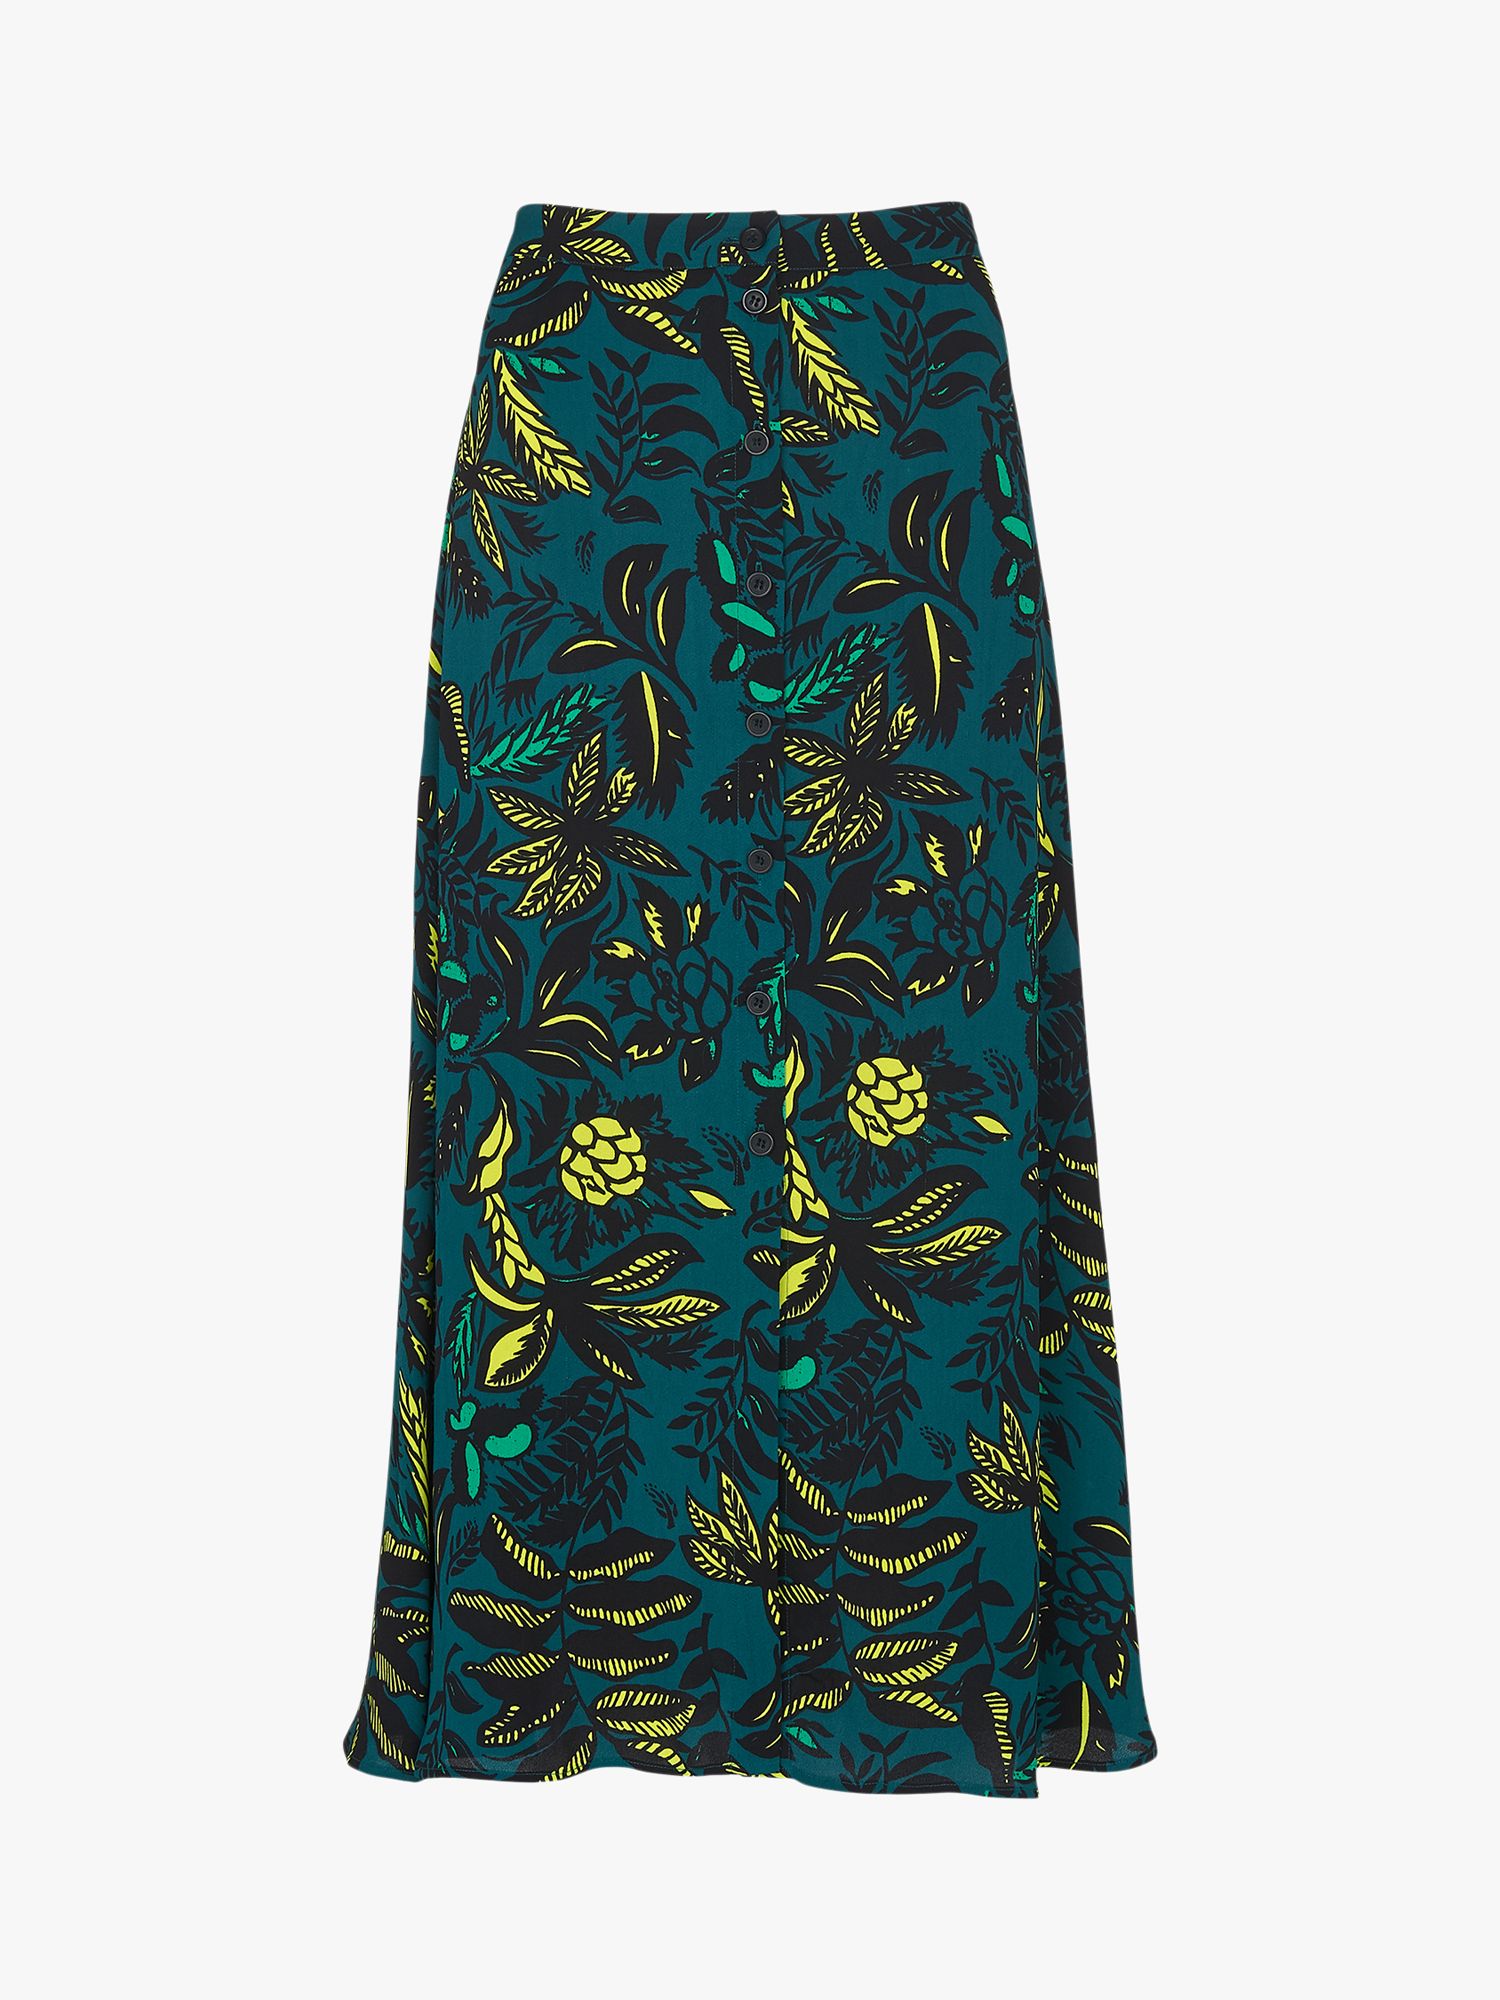 Whistles Leaves Print Skirt, Green/Multi